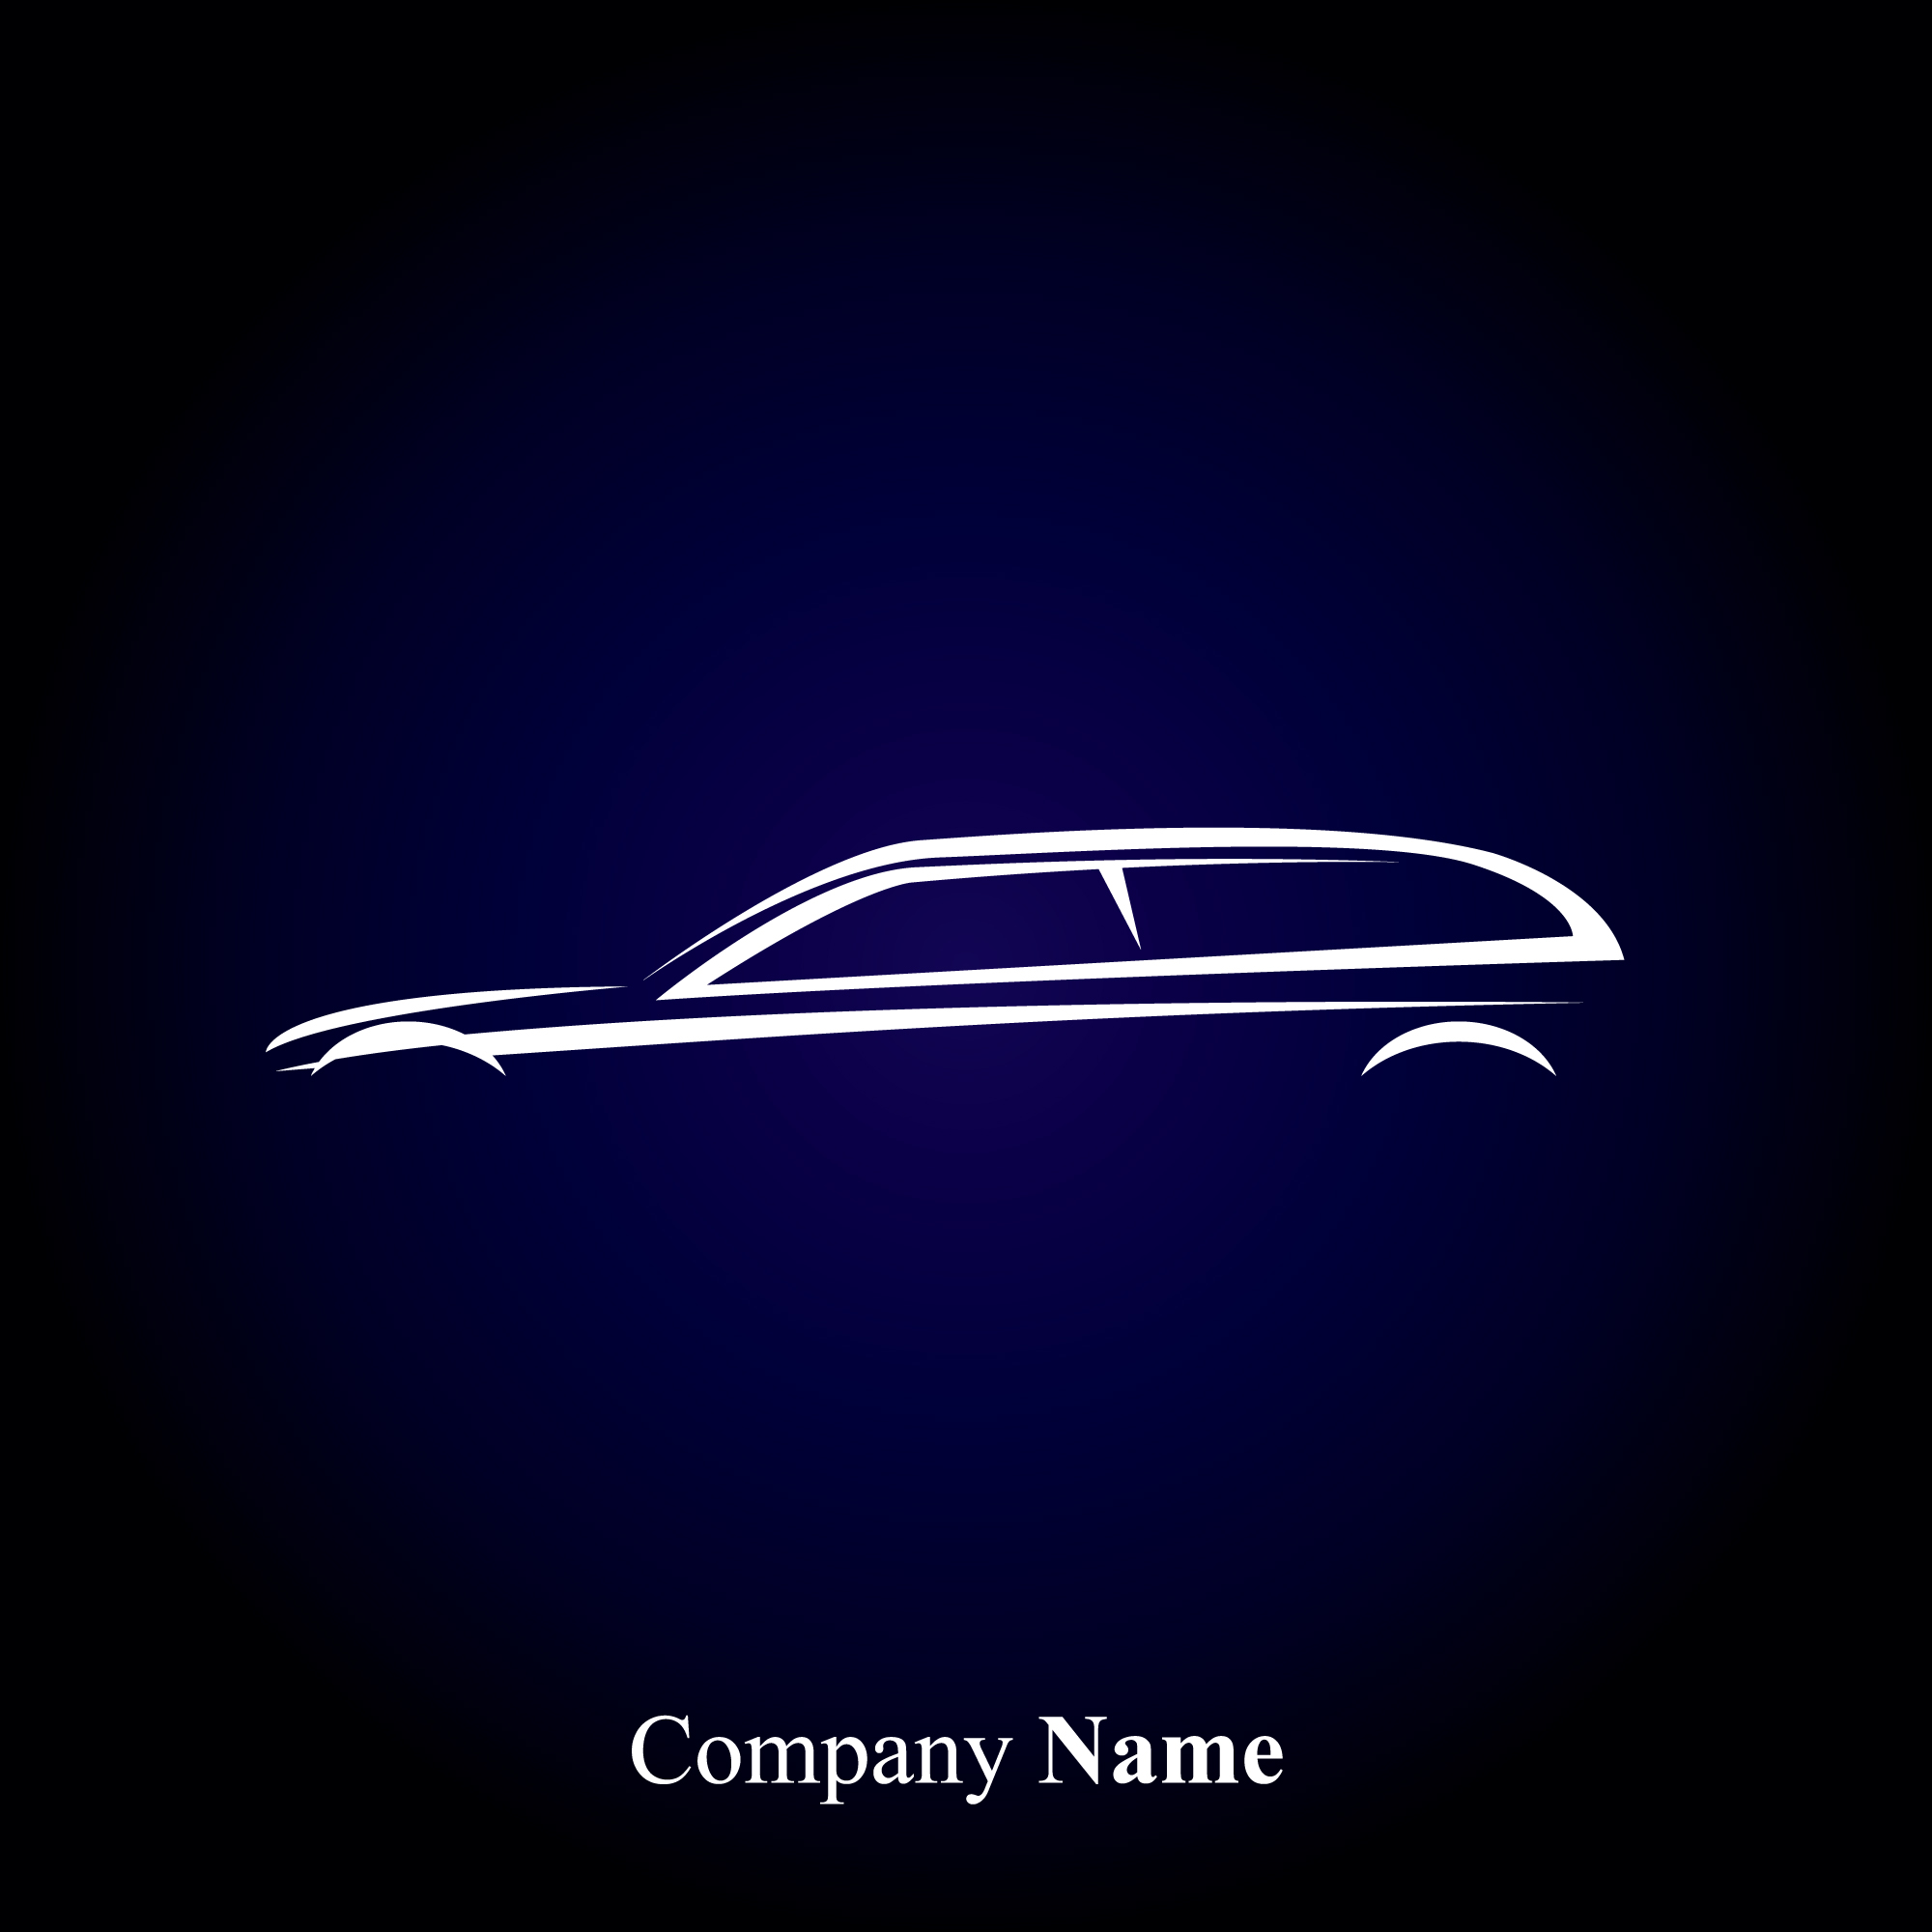 Creative Car logos design vector 05  